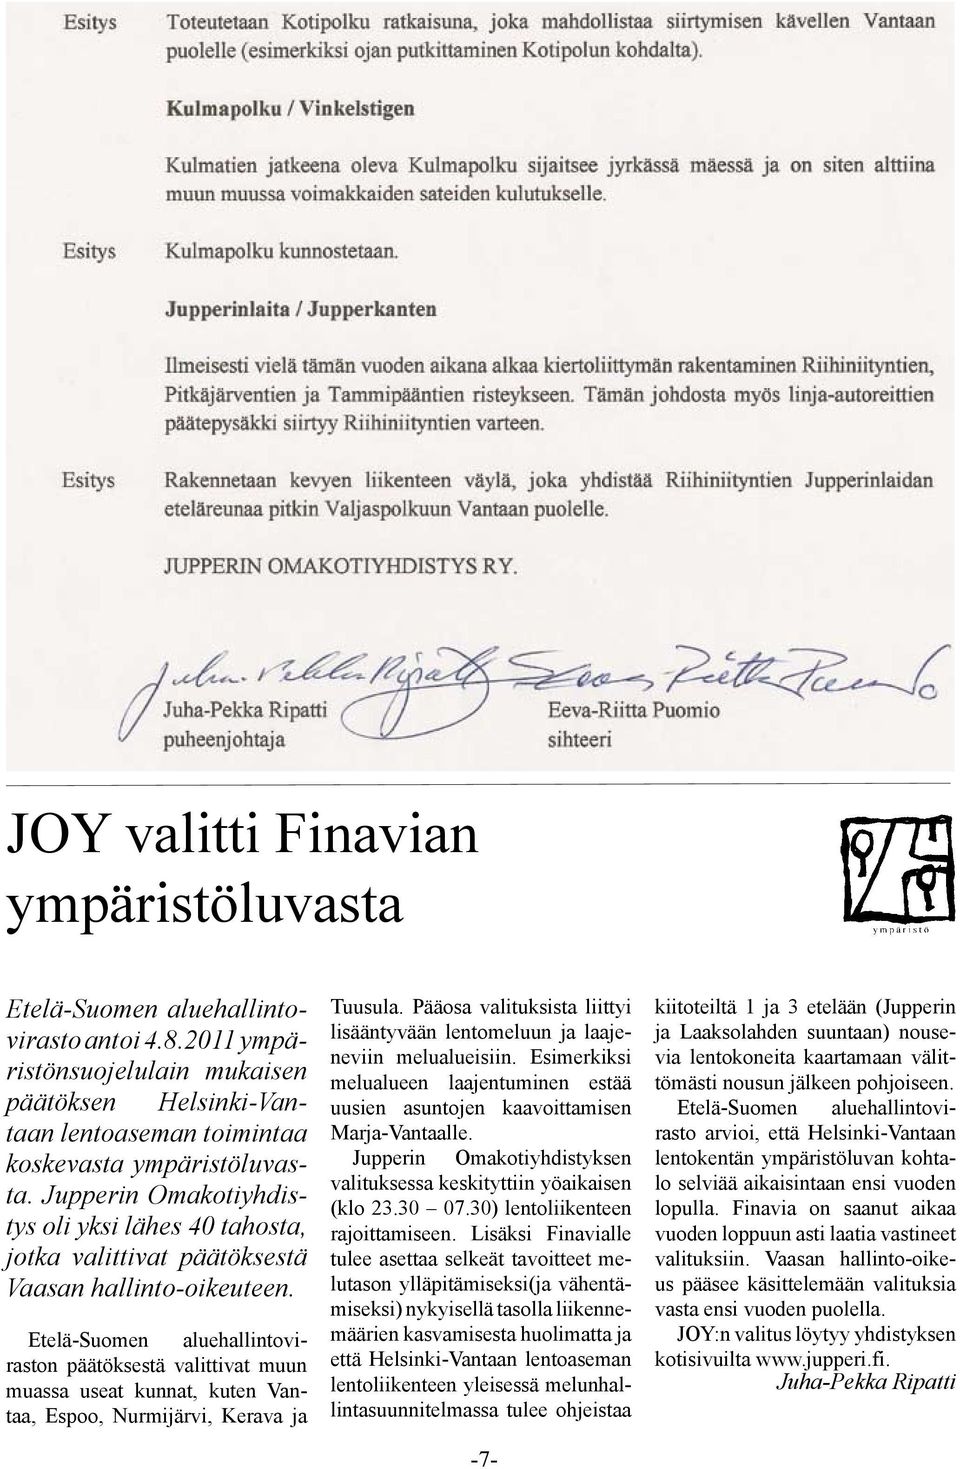 Etelä-Suomen aluehallintoviraston päätöksestä valittivat muun muassa useat kunnat, kuten Vantaa, Espoo, Nurmijärvi, Kerava ja Tuusula.